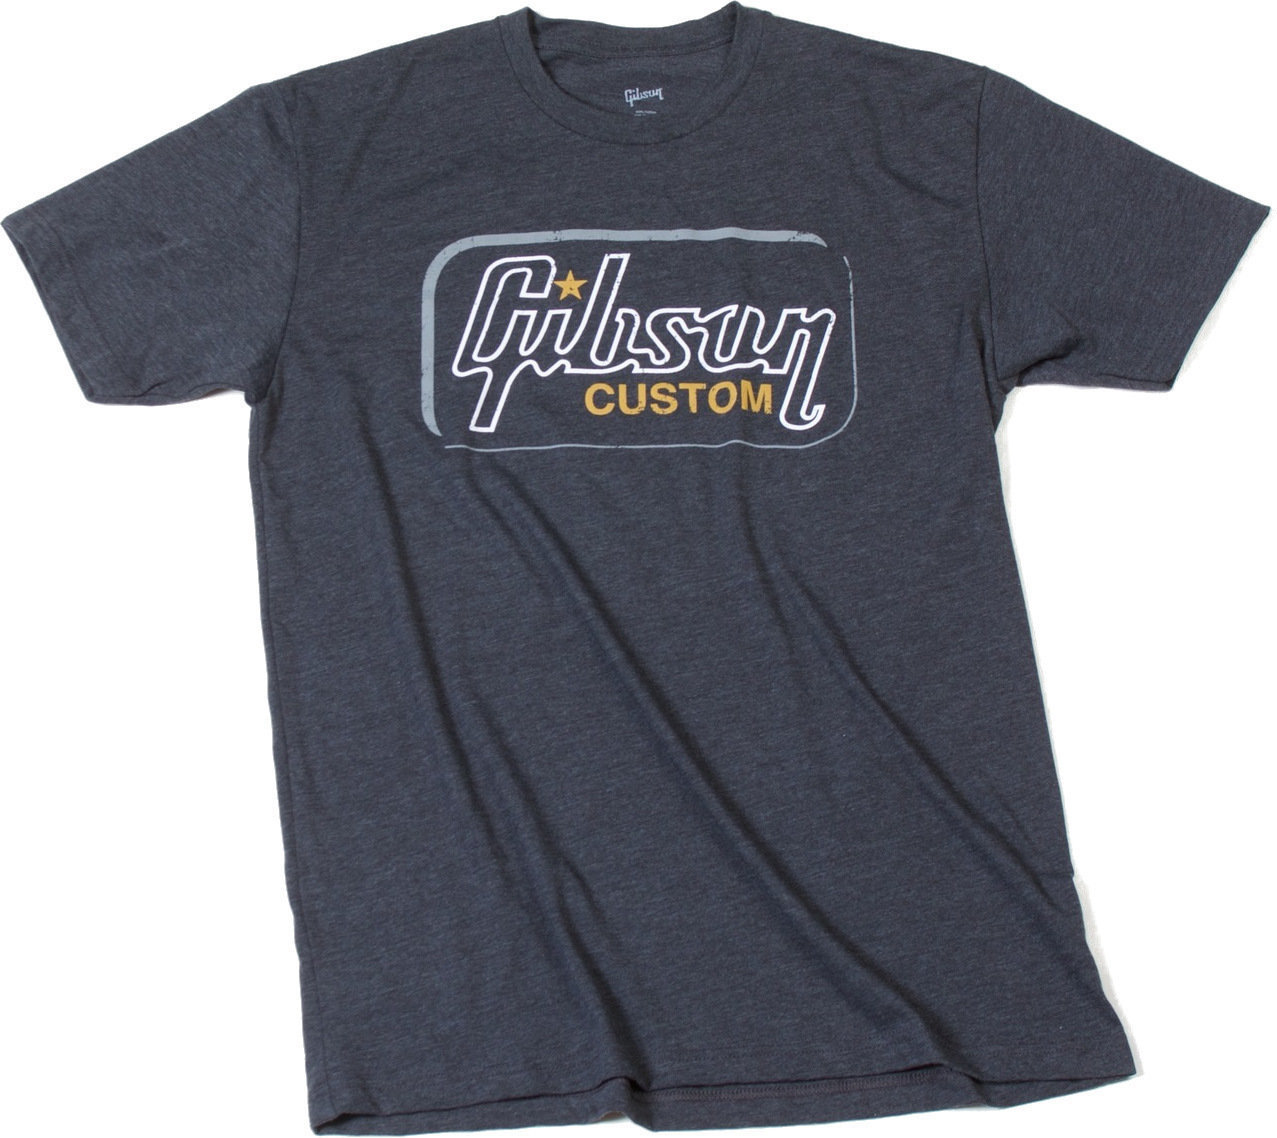 T-Shirt Gibson T-Shirt Custom Heathered Gray M